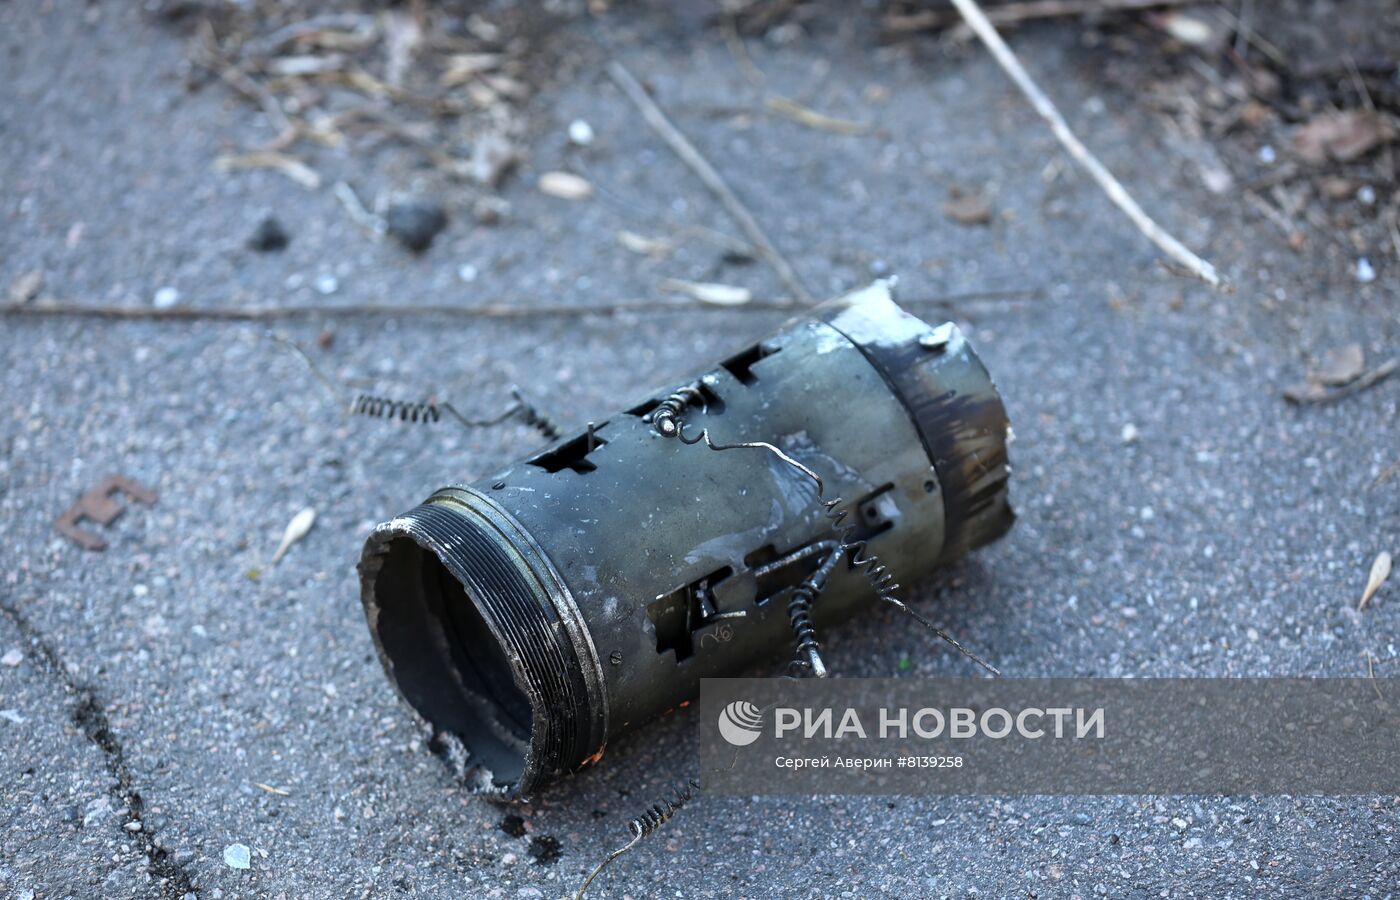 Пострадавшие районы Донецка при обстреле ВСУ